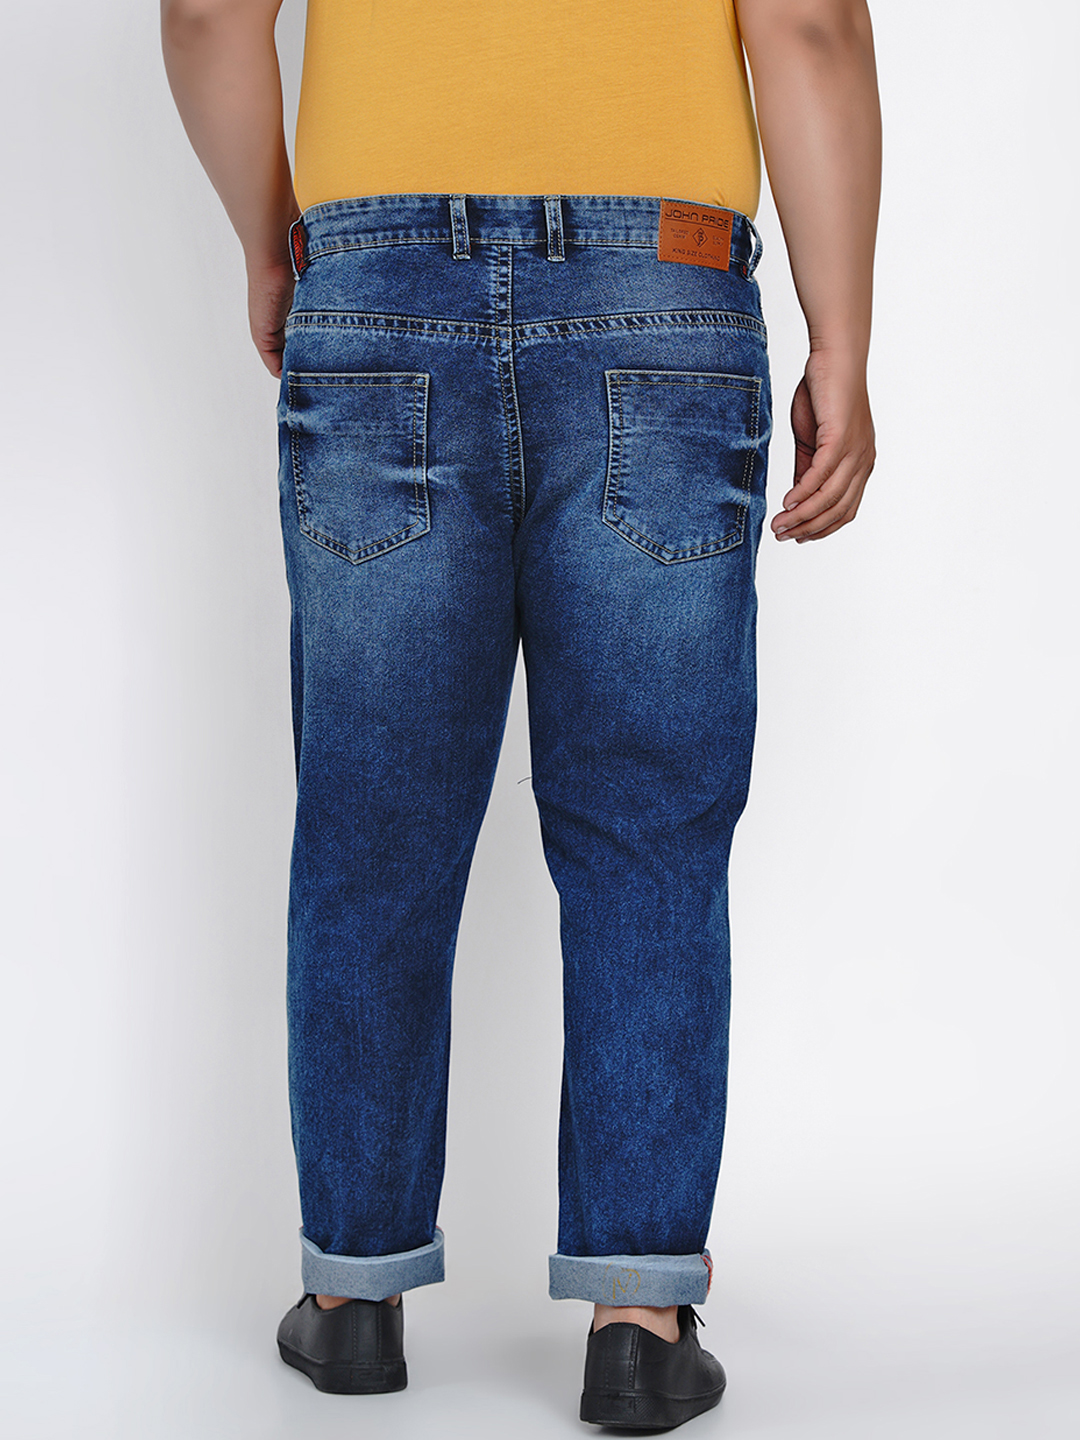 affordables/jeans/JPJ2013/jpj2013-5.jpg